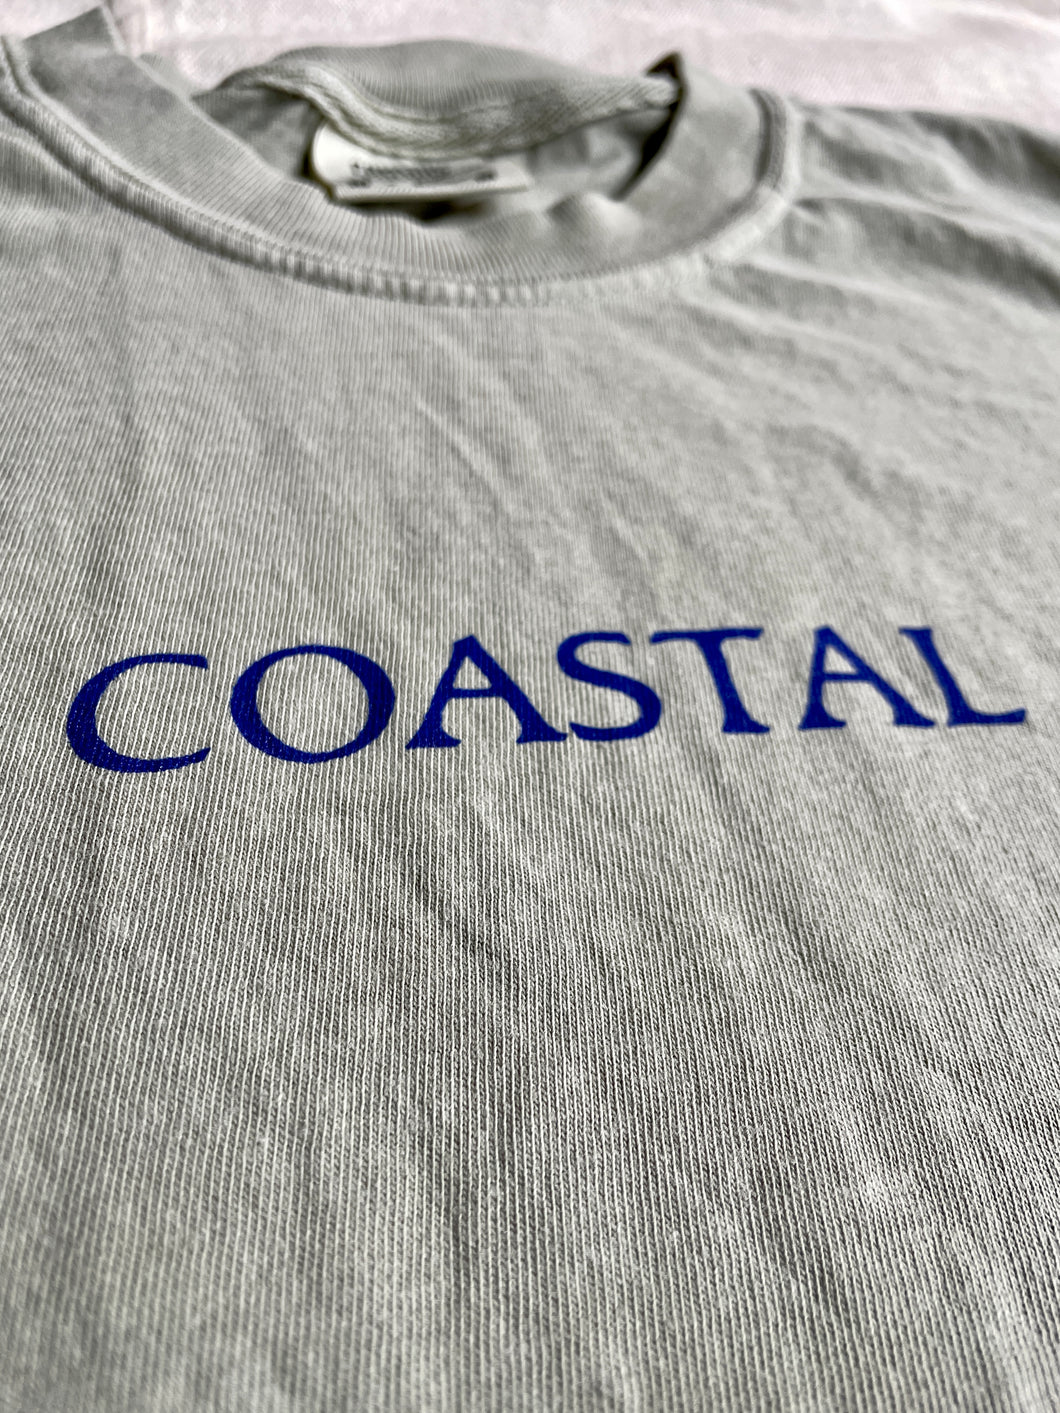 Coastal Long Sleeve Tee Shirt-2 Colors